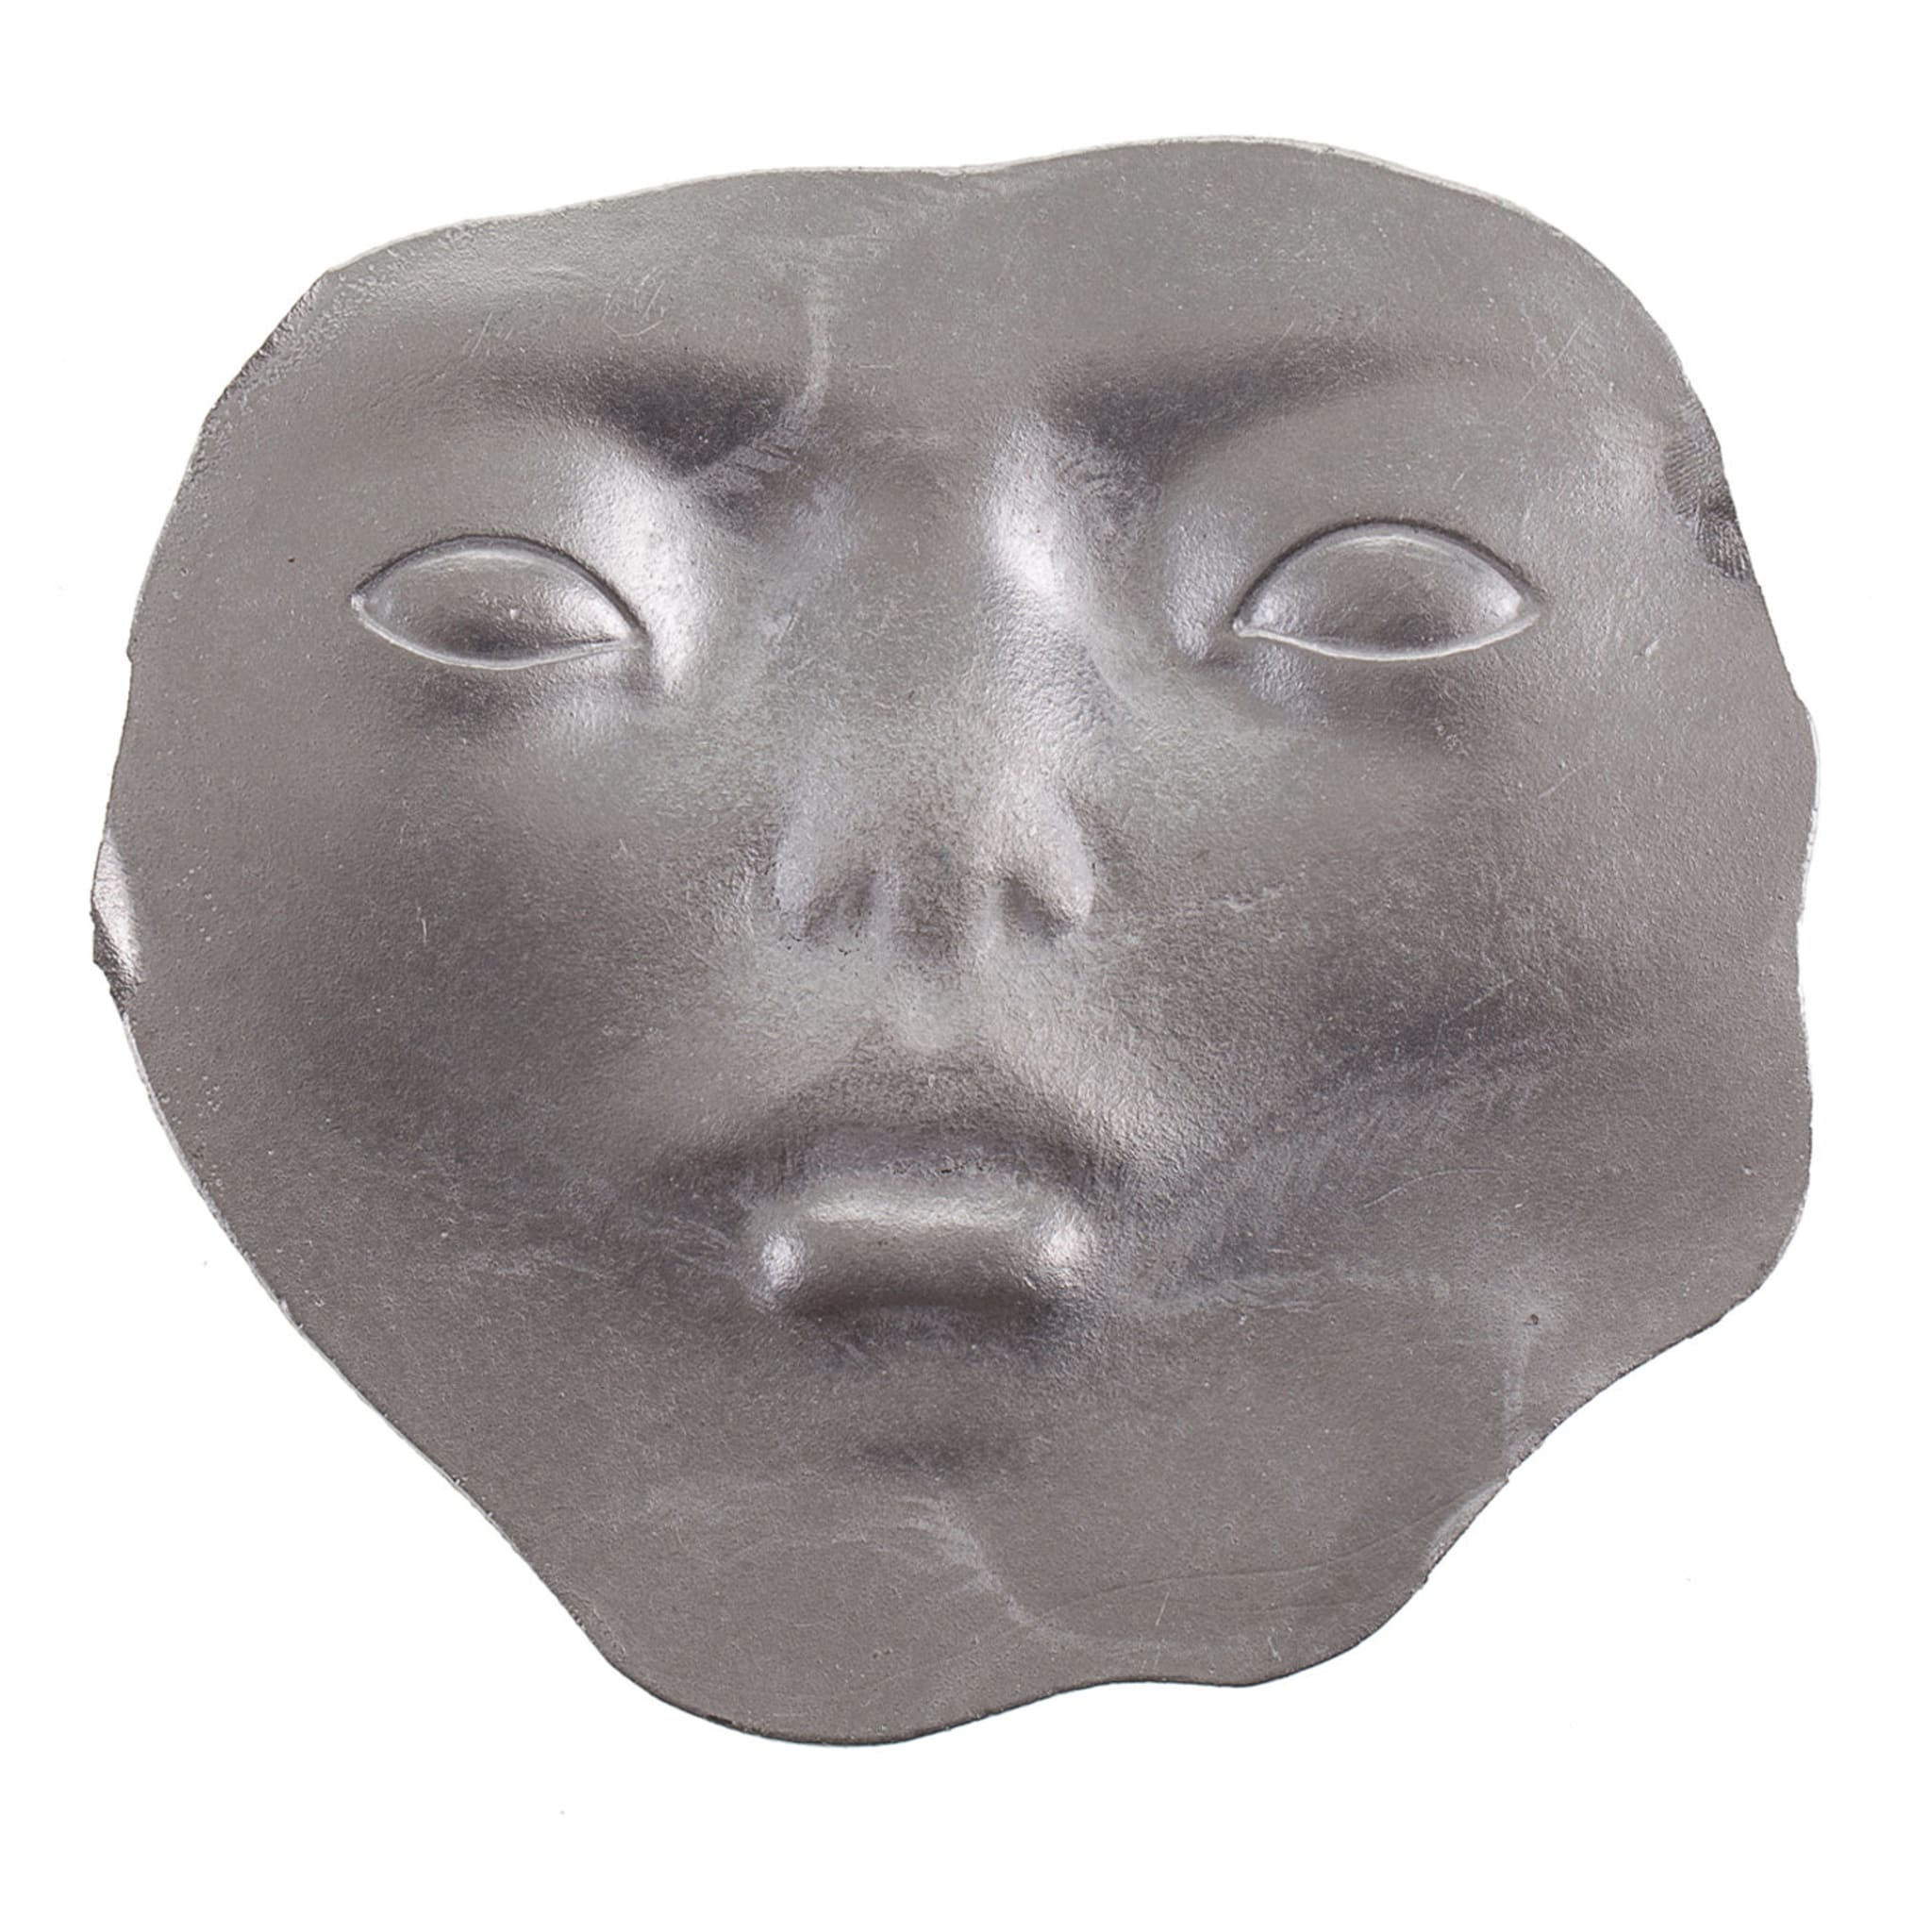 Scultura di frammenti di volto umano - Vista principale